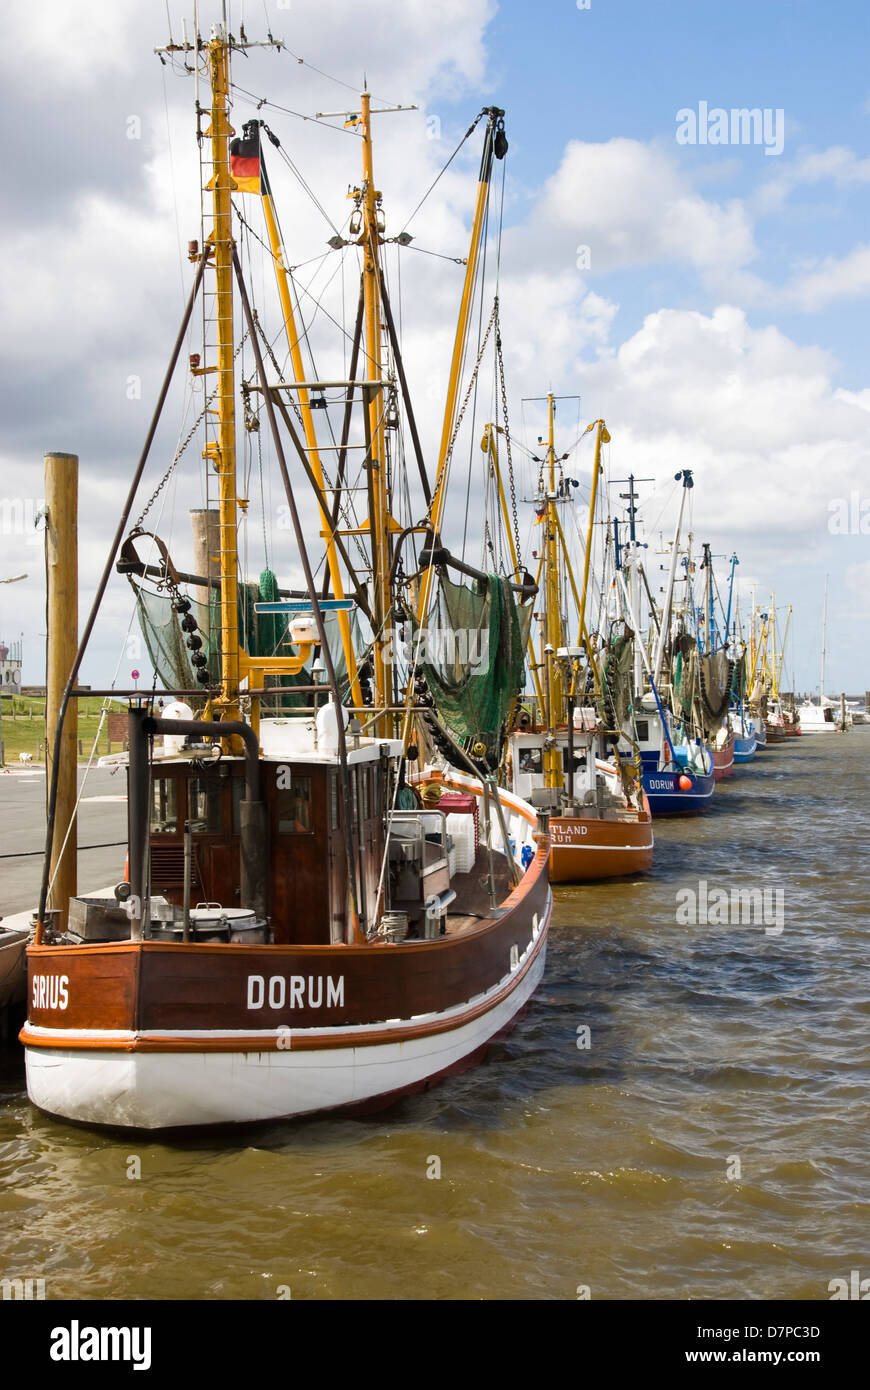 Puerto pesquero, Dorumer Neufeld, Baja Sajonia, Alemania, Dorumer Fischerhafen Neufeld, Niedersachsen, Deutschland Foto de stock